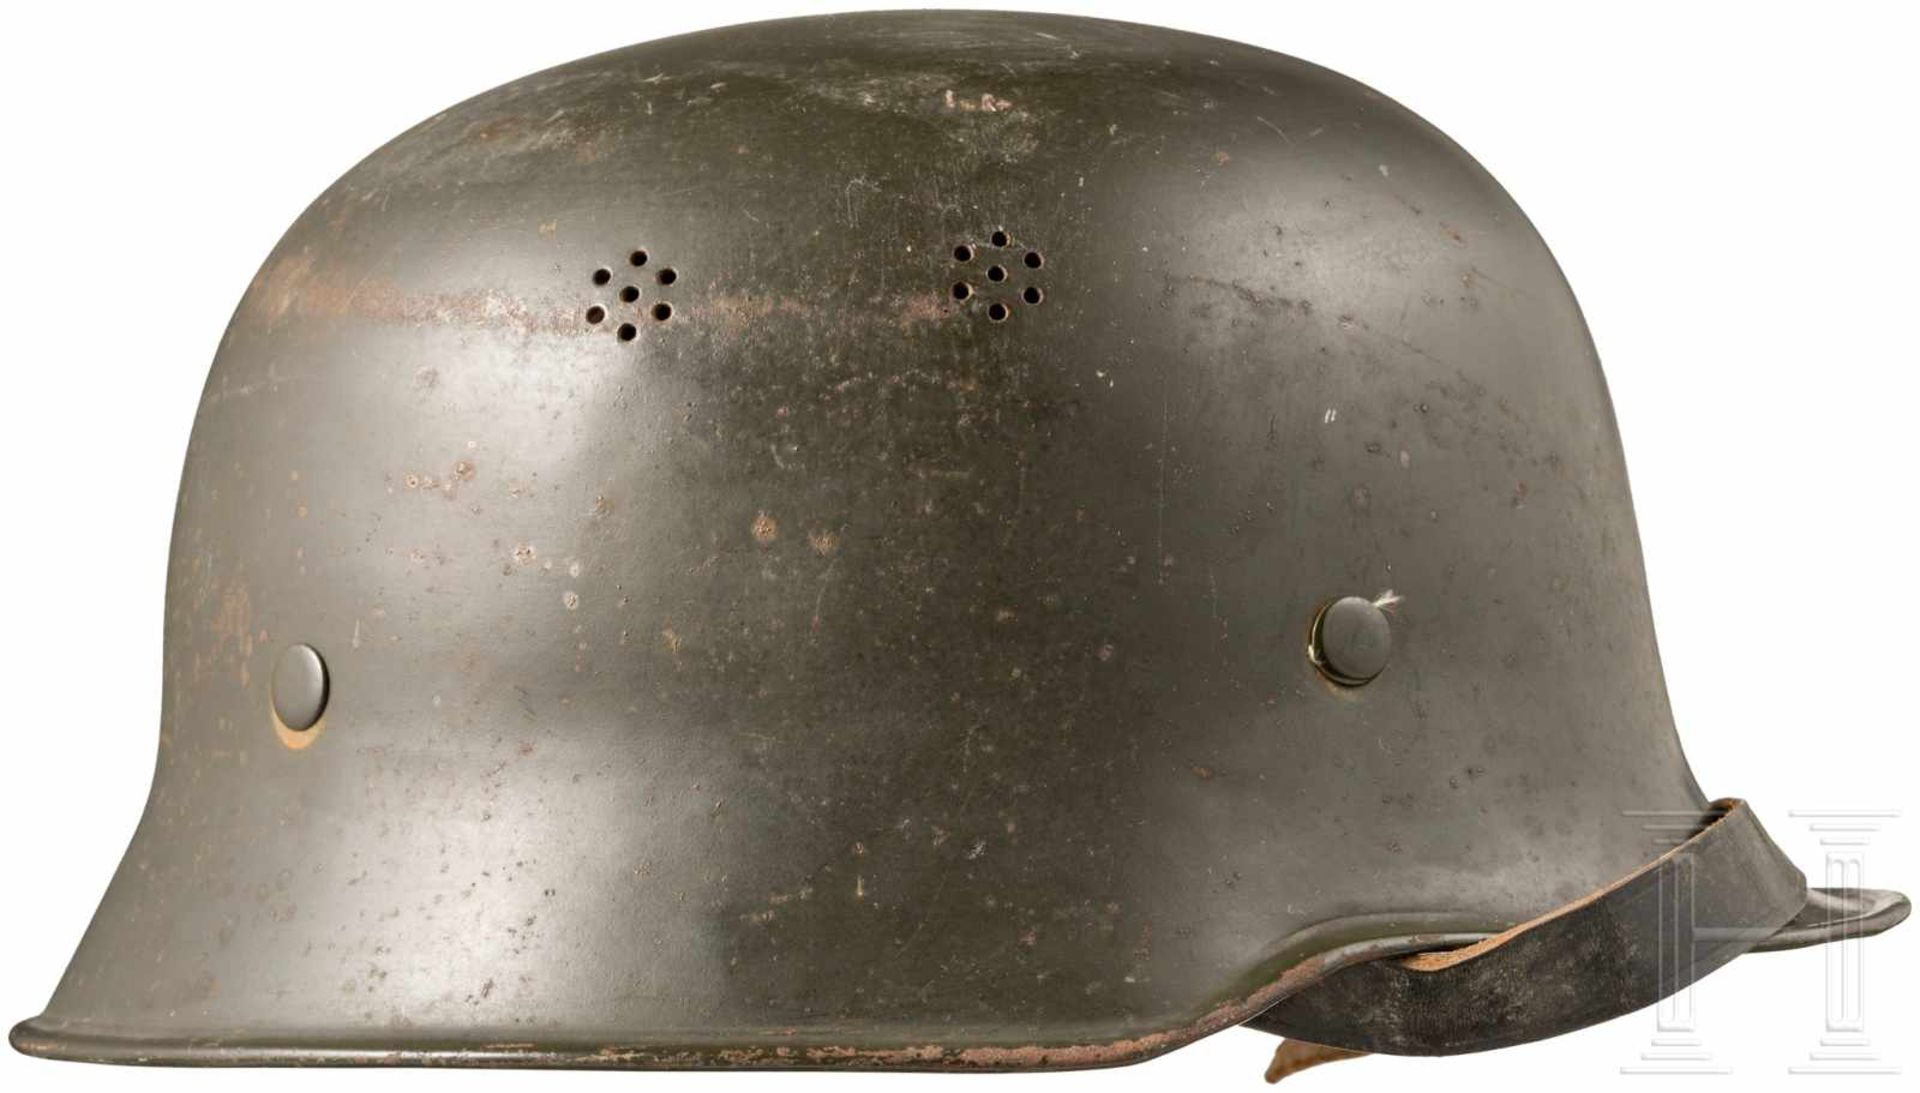 Stahlhelm für RotkreuzangehörigeZiviler Helm mit seitlichem Rot Kreuz-Emblem. Ohne Obligo.Zustand: - Bild 2 aus 3